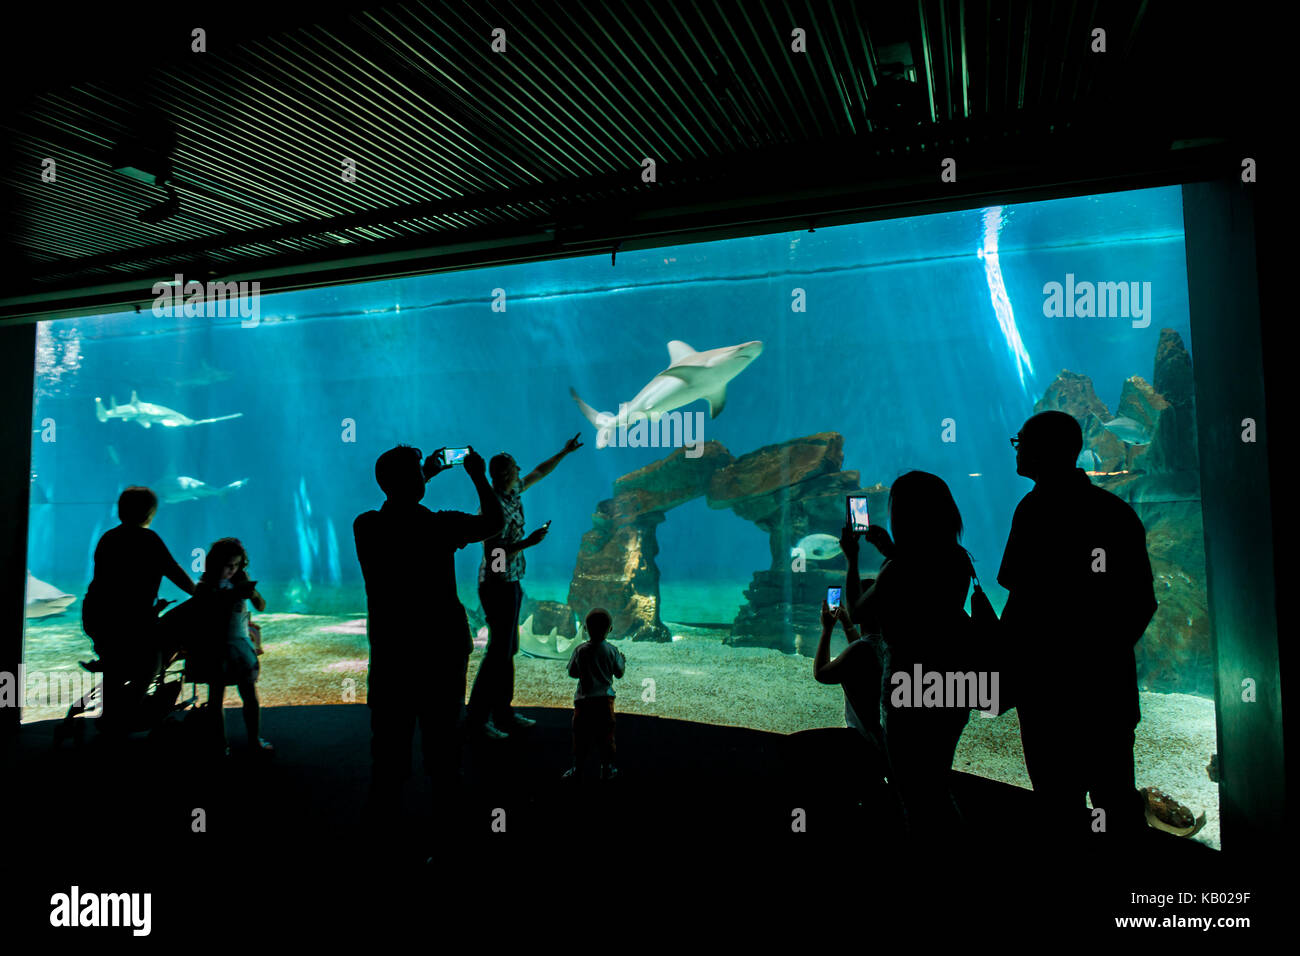 Genua, Italien - Juni 2, 2015: Nicht identifizierte Personen in das Aquarium von Genua. Das Aquarium von Genua ist das größte Aquarium in Italien und zu den größten in der EU Stockfoto